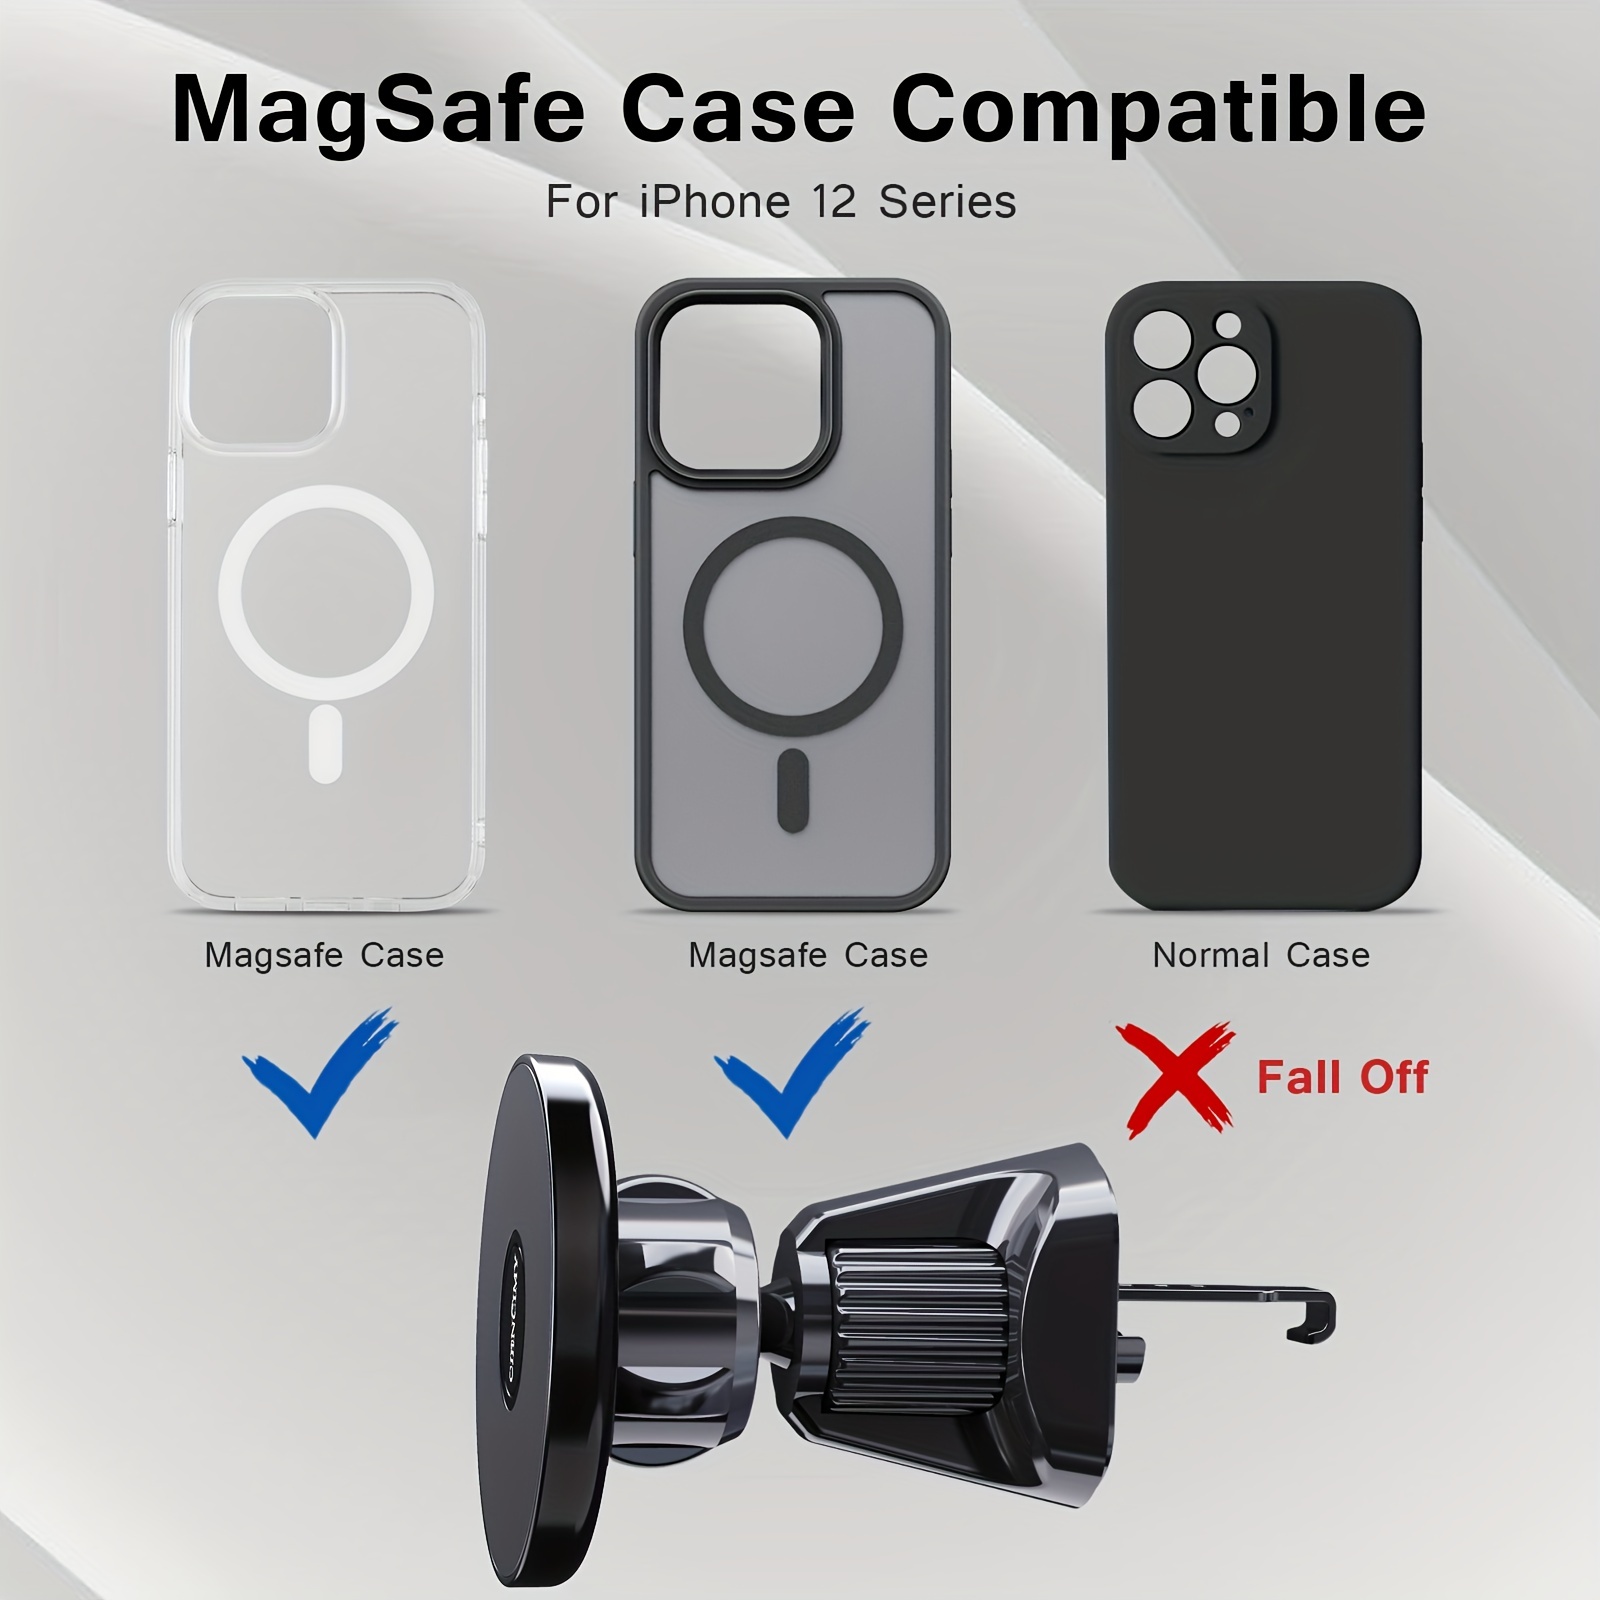 Soporte Magnético Coche Ewa Compatible Iphone 12 13 14 - Temu